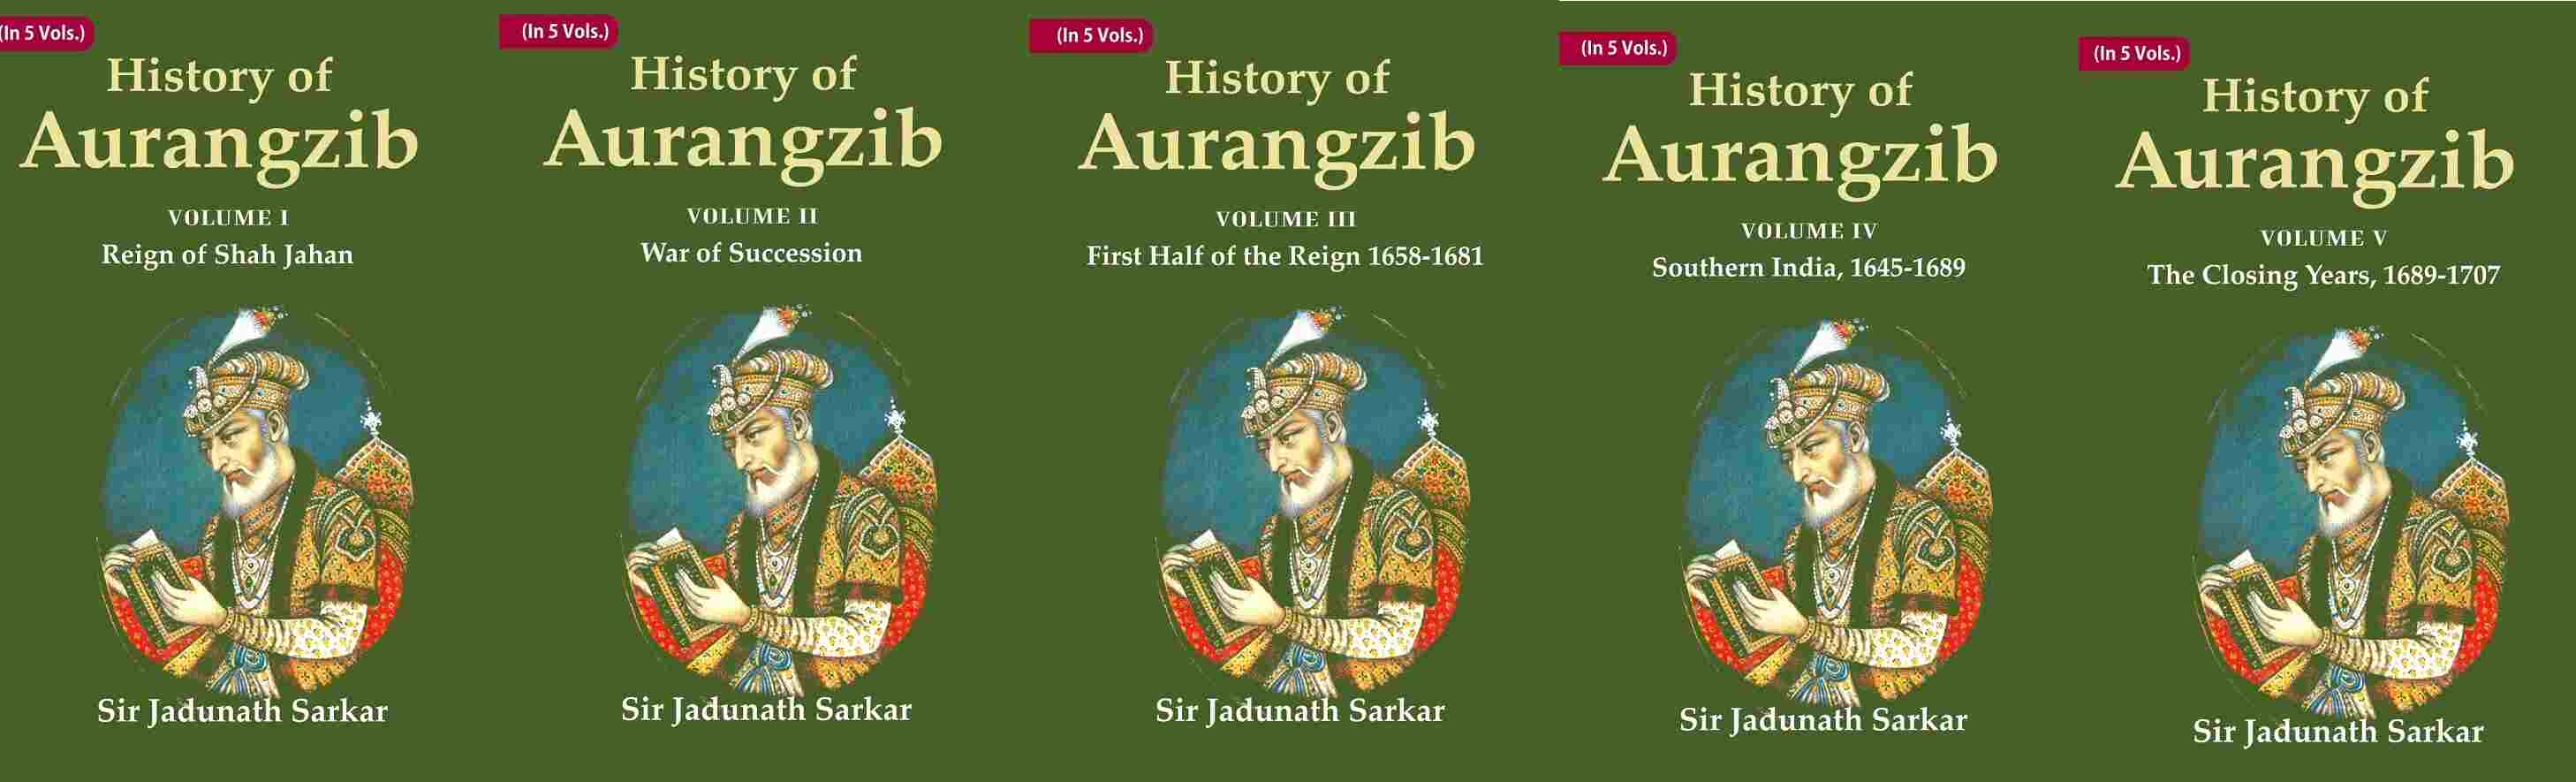 History of Aurangzib 5 Vols. Set 5 Vols. Set 5 Vols. Set 5 Vols. Set 5 Vols. Set 5 Vols. Set 5 Vo...